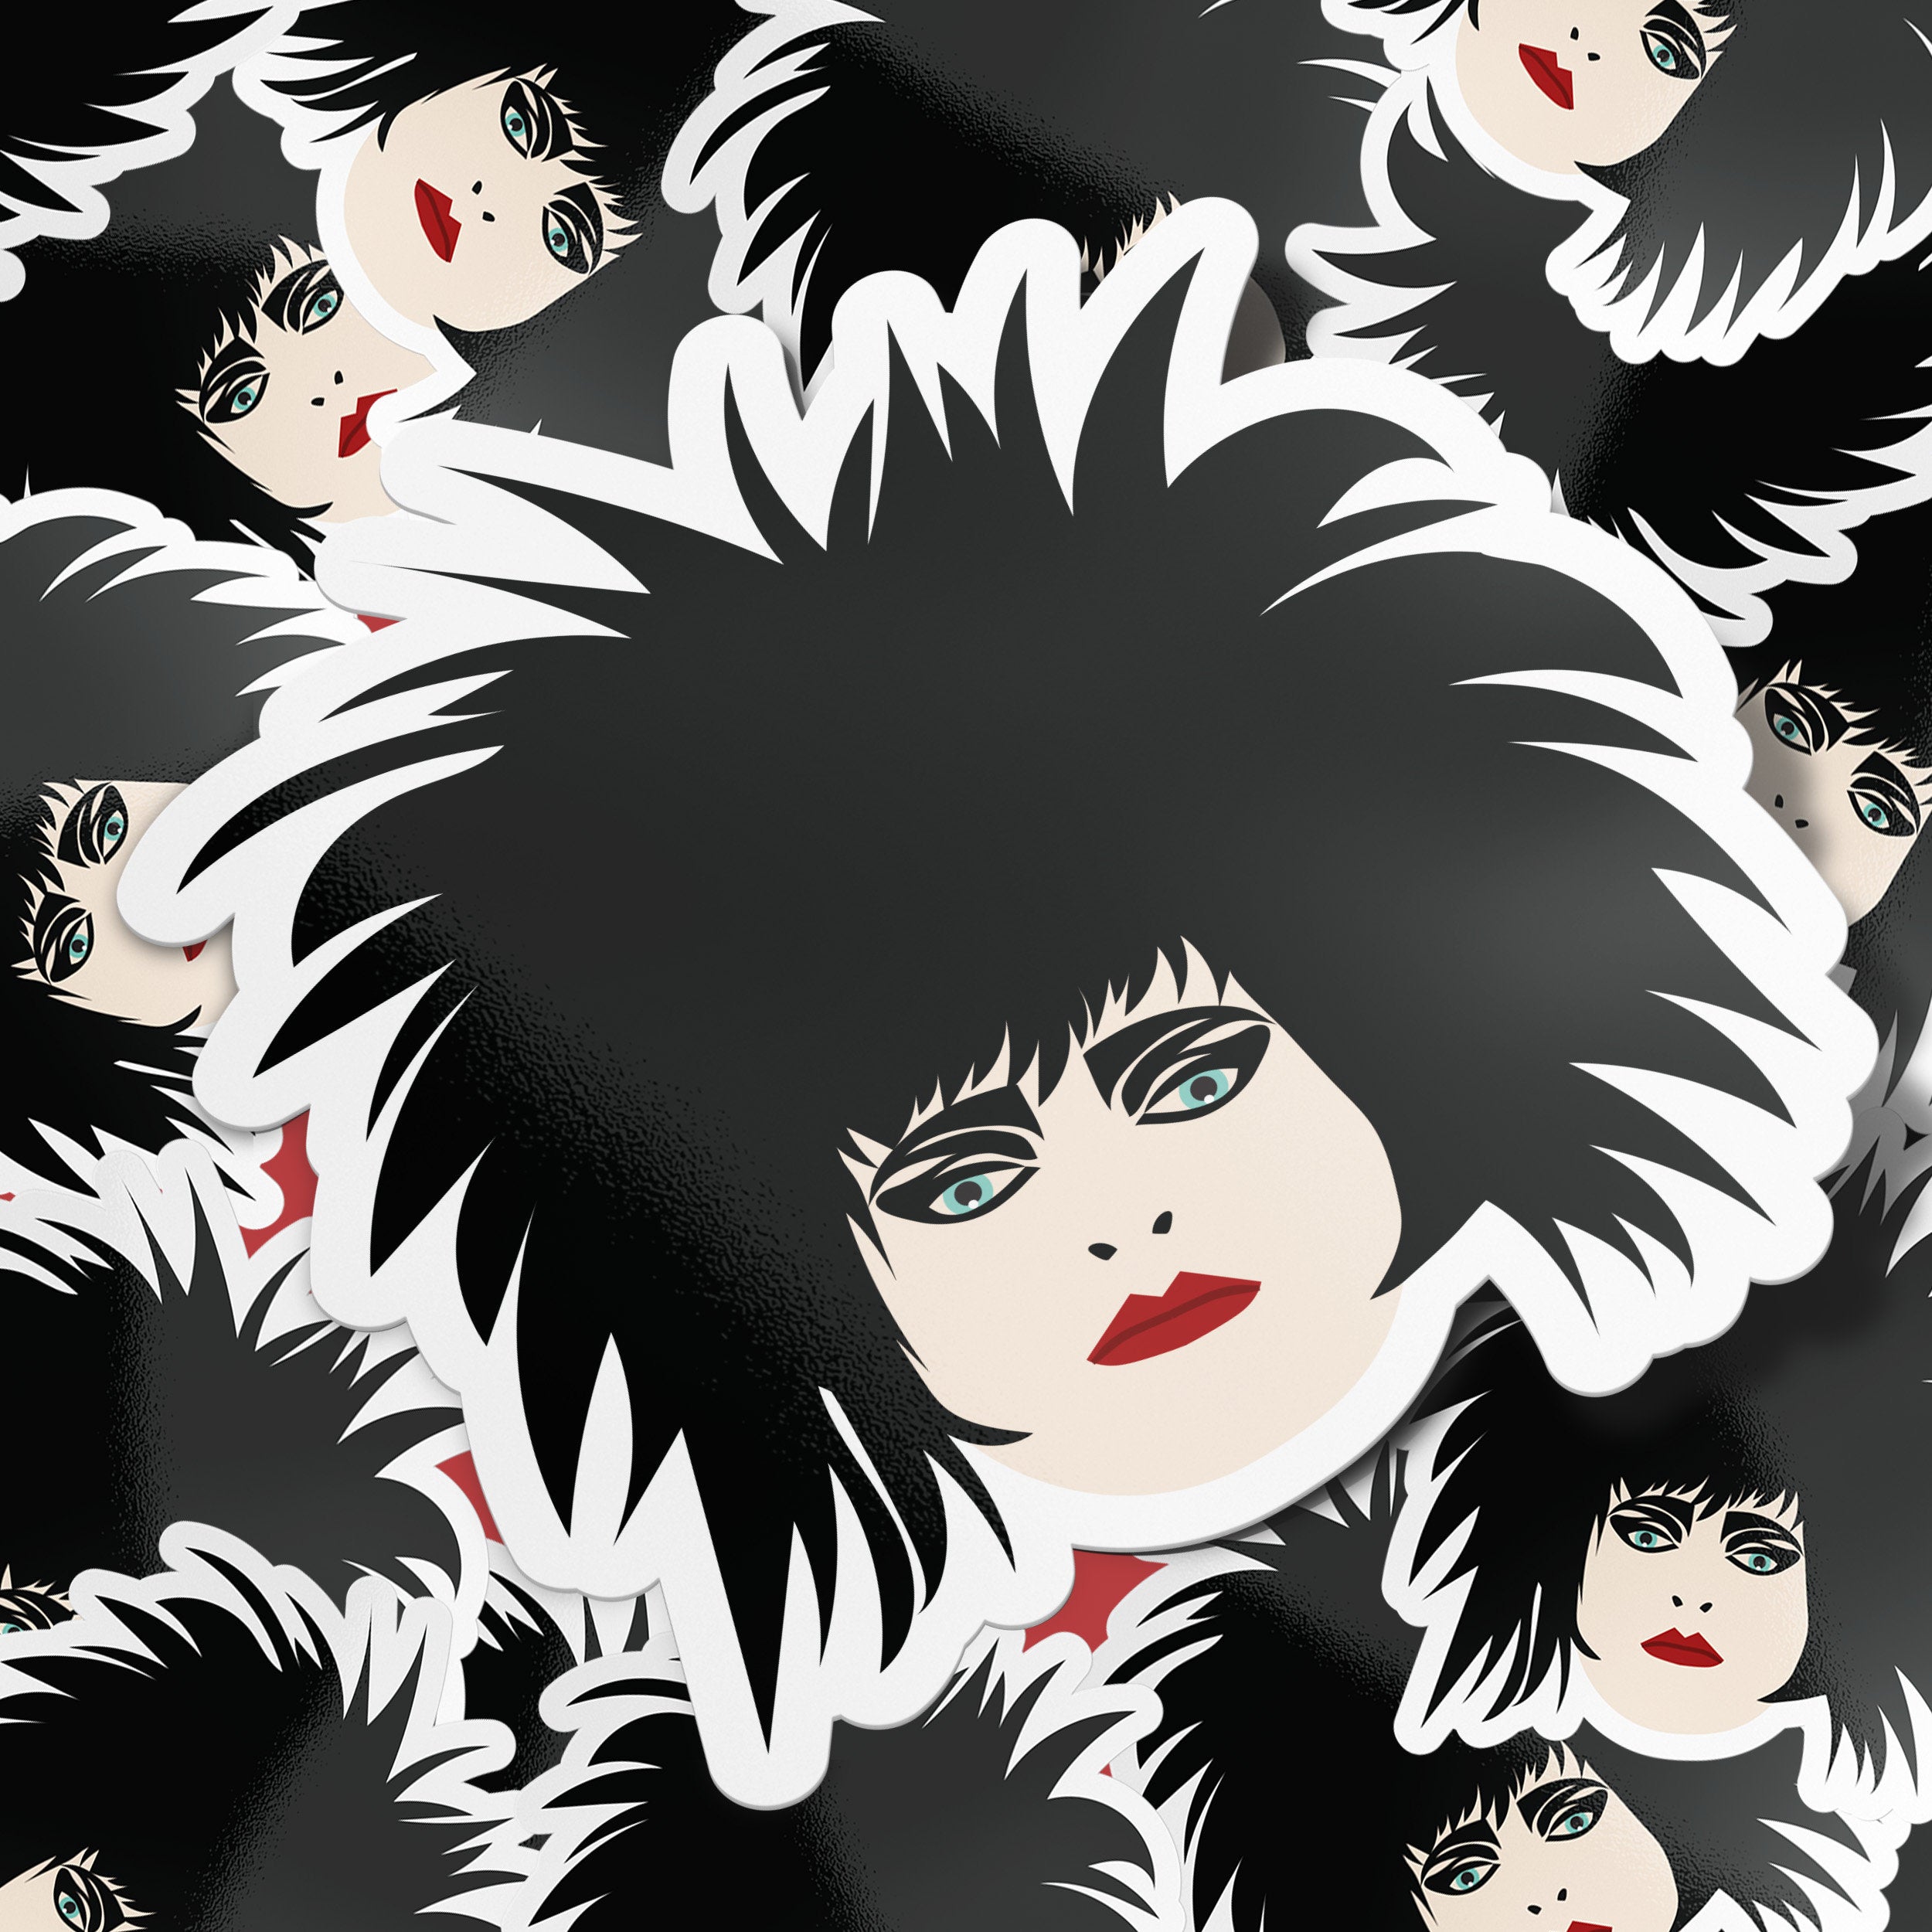 1980s Goth Punk Premium Vinyl Sticker, Siouxsie Sioux, Glossy Laptop Decal